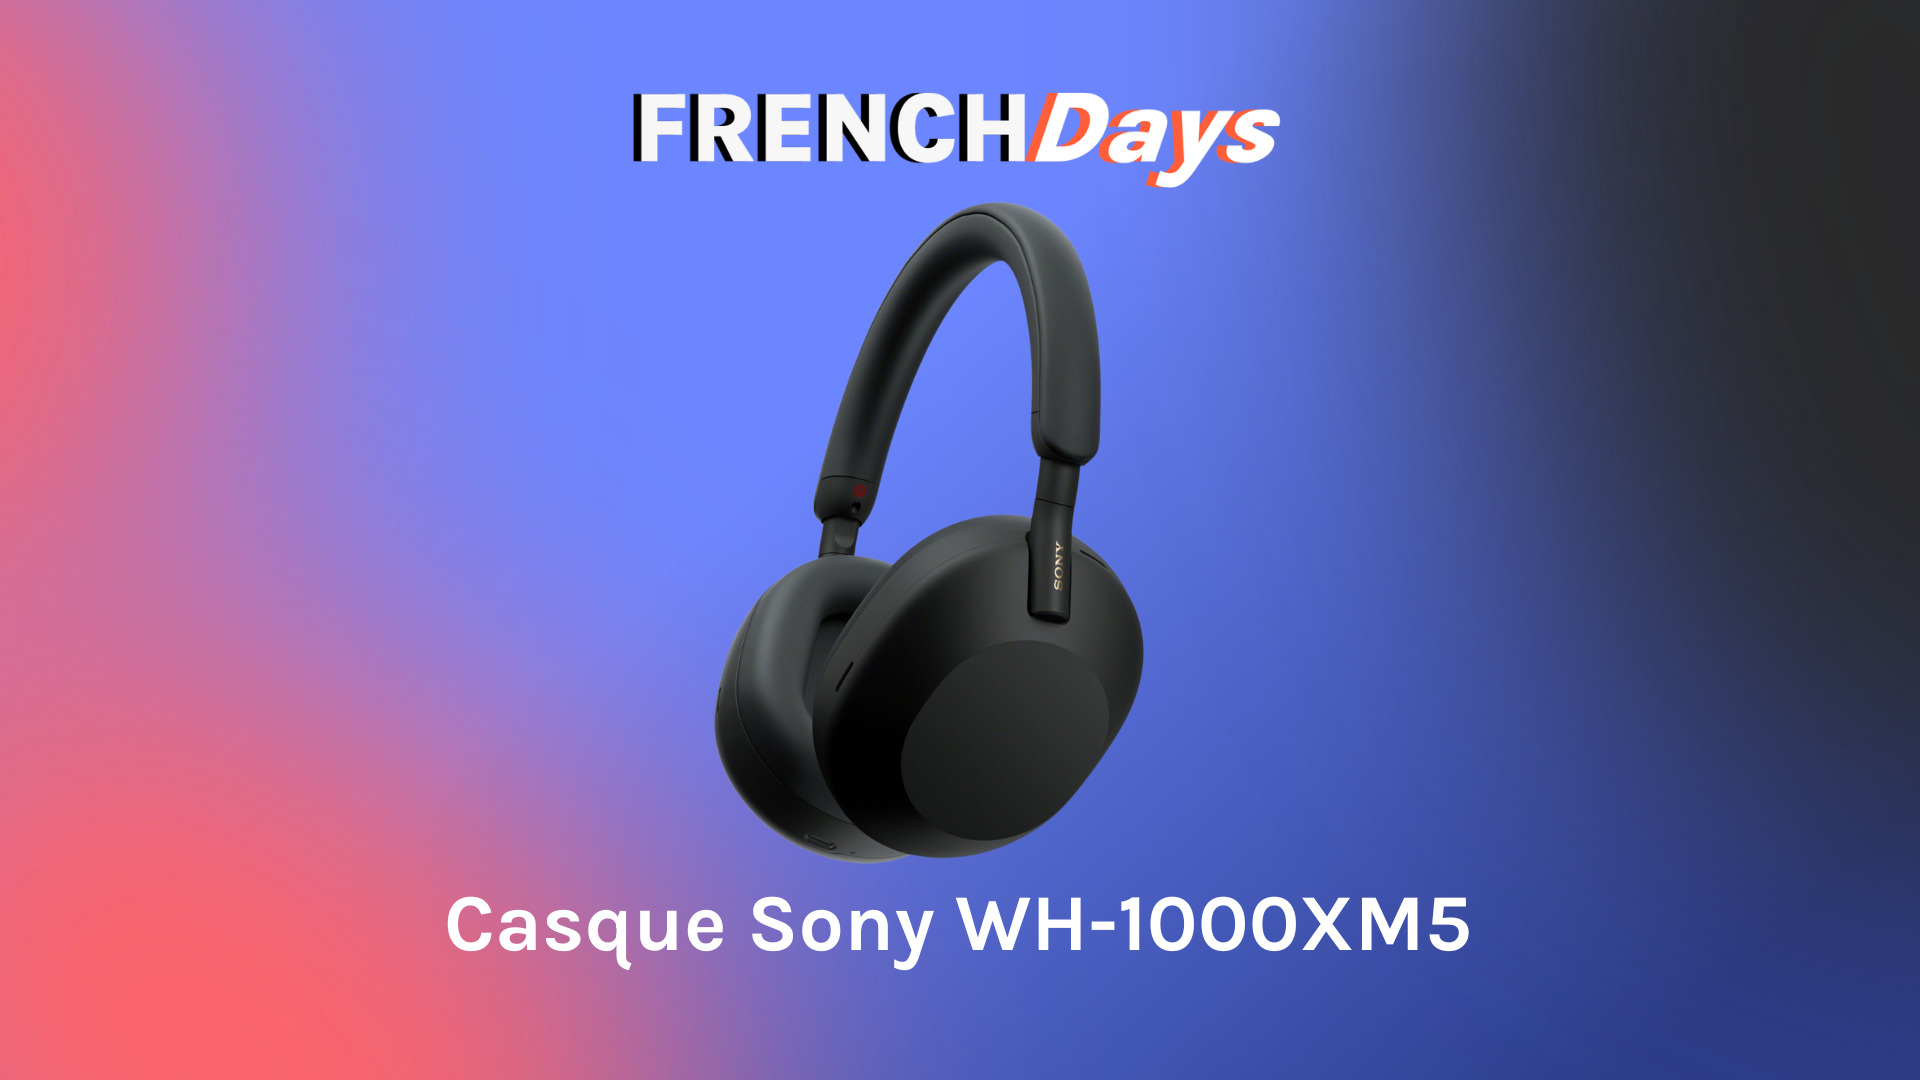 L'excellent casque WH-1000XM5 de Sony baisse de prix pour les